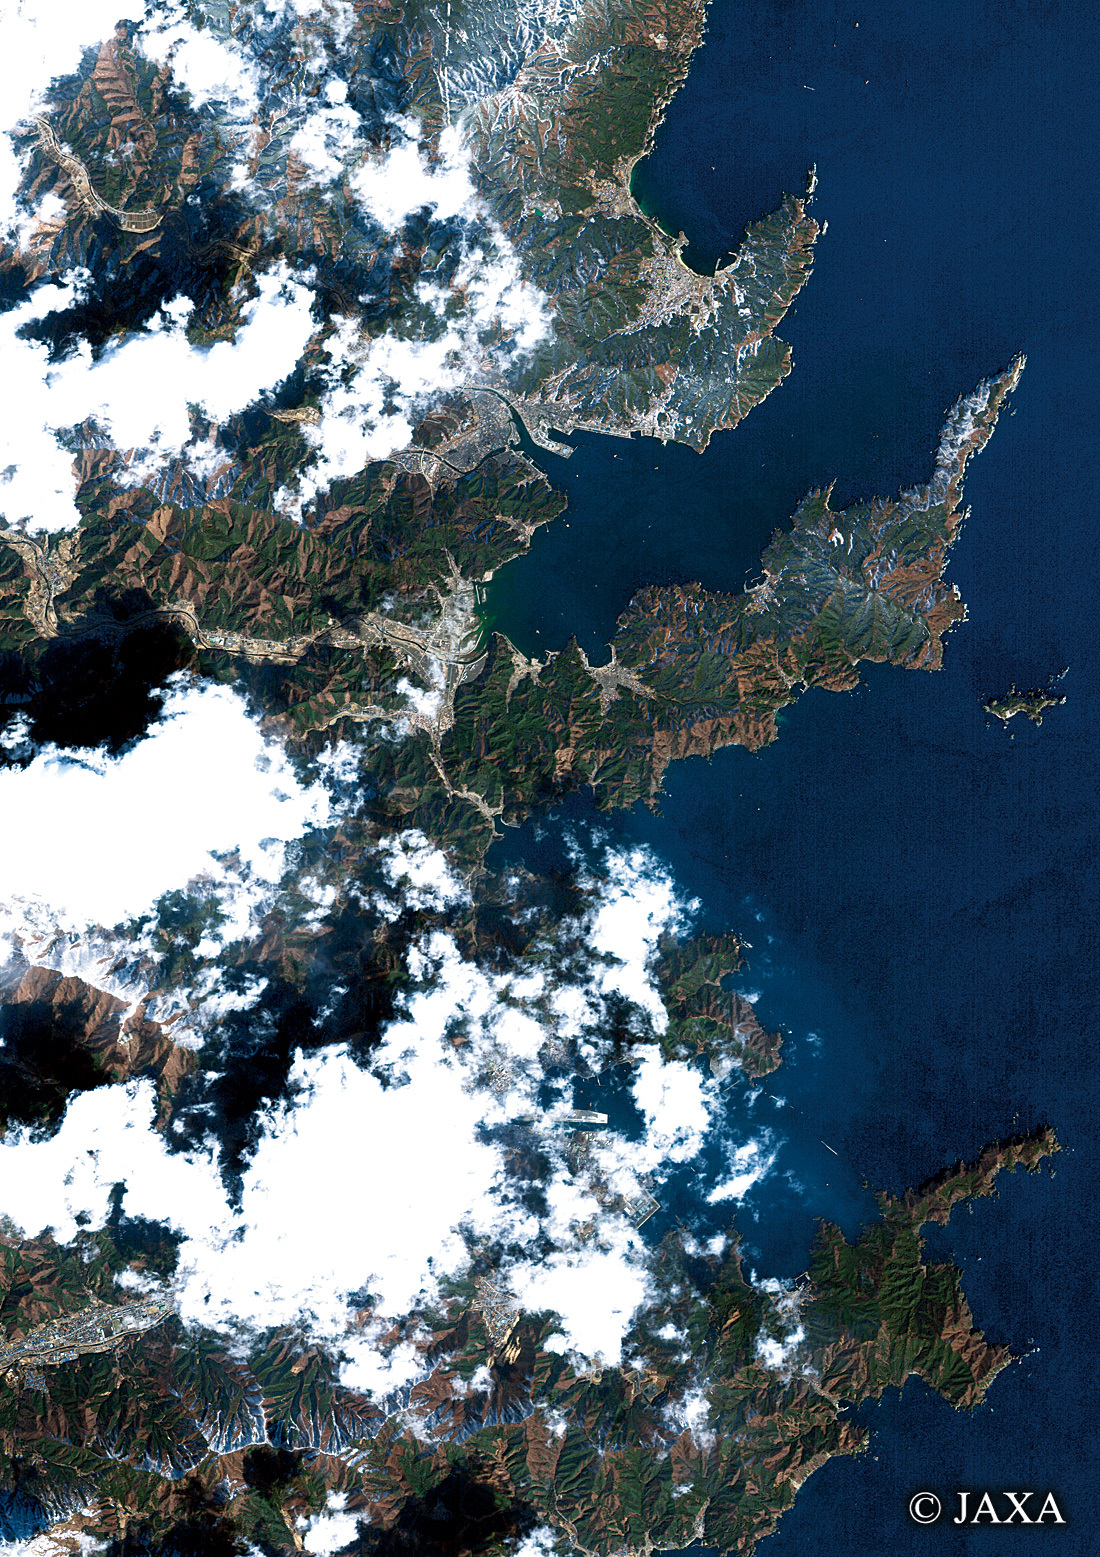 だいちから見た日本の都市 震災後の大槌町から釜石市:衛星画像